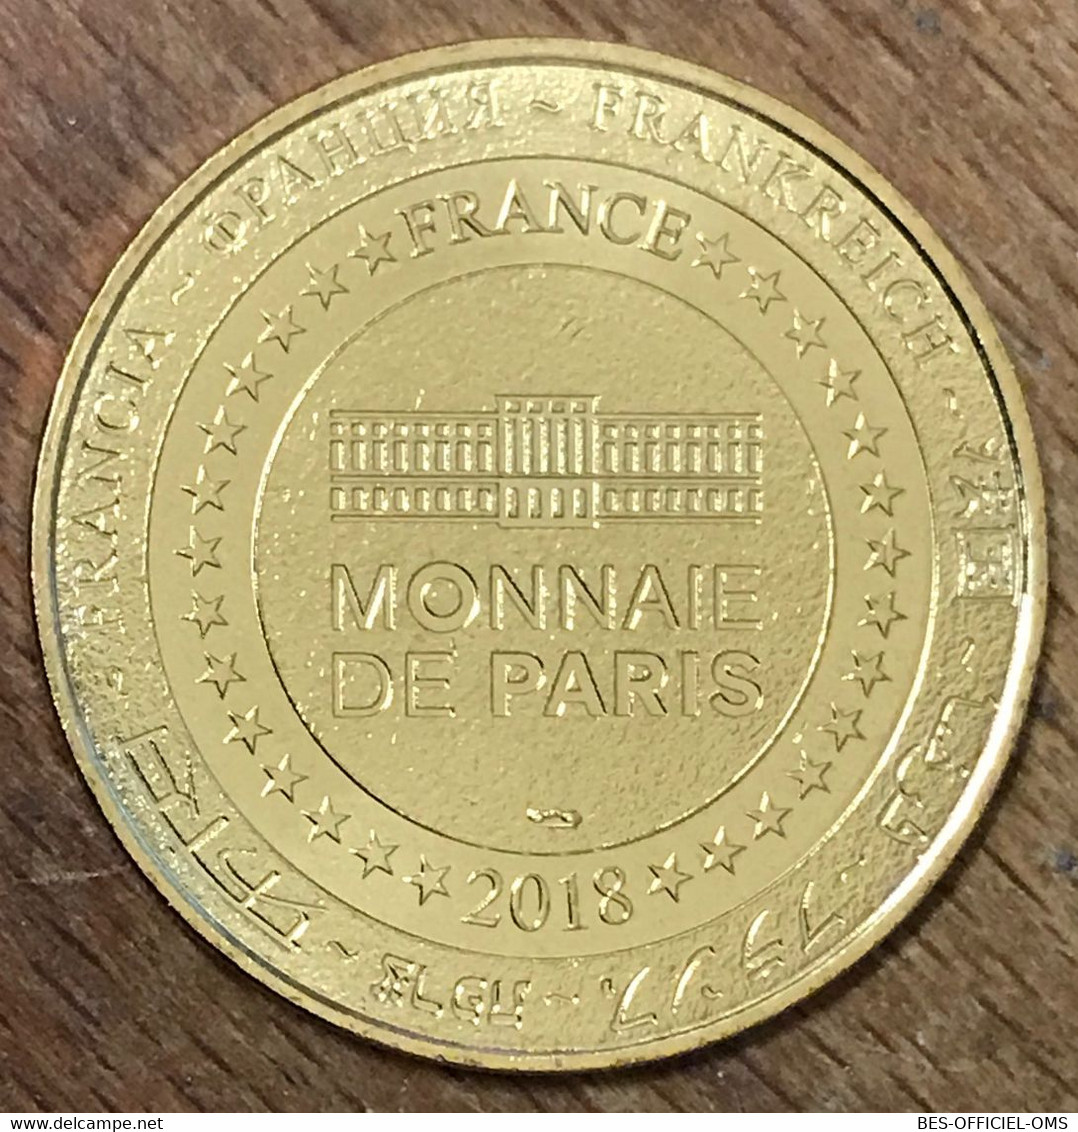 75007 PARIS LOUIS XIV ROI SOLEIL MDP 2018 MÉDAILLE MONNAIE DE PARIS JETON TOURISTIQUE MEDALS COINS TOKENS - 2018